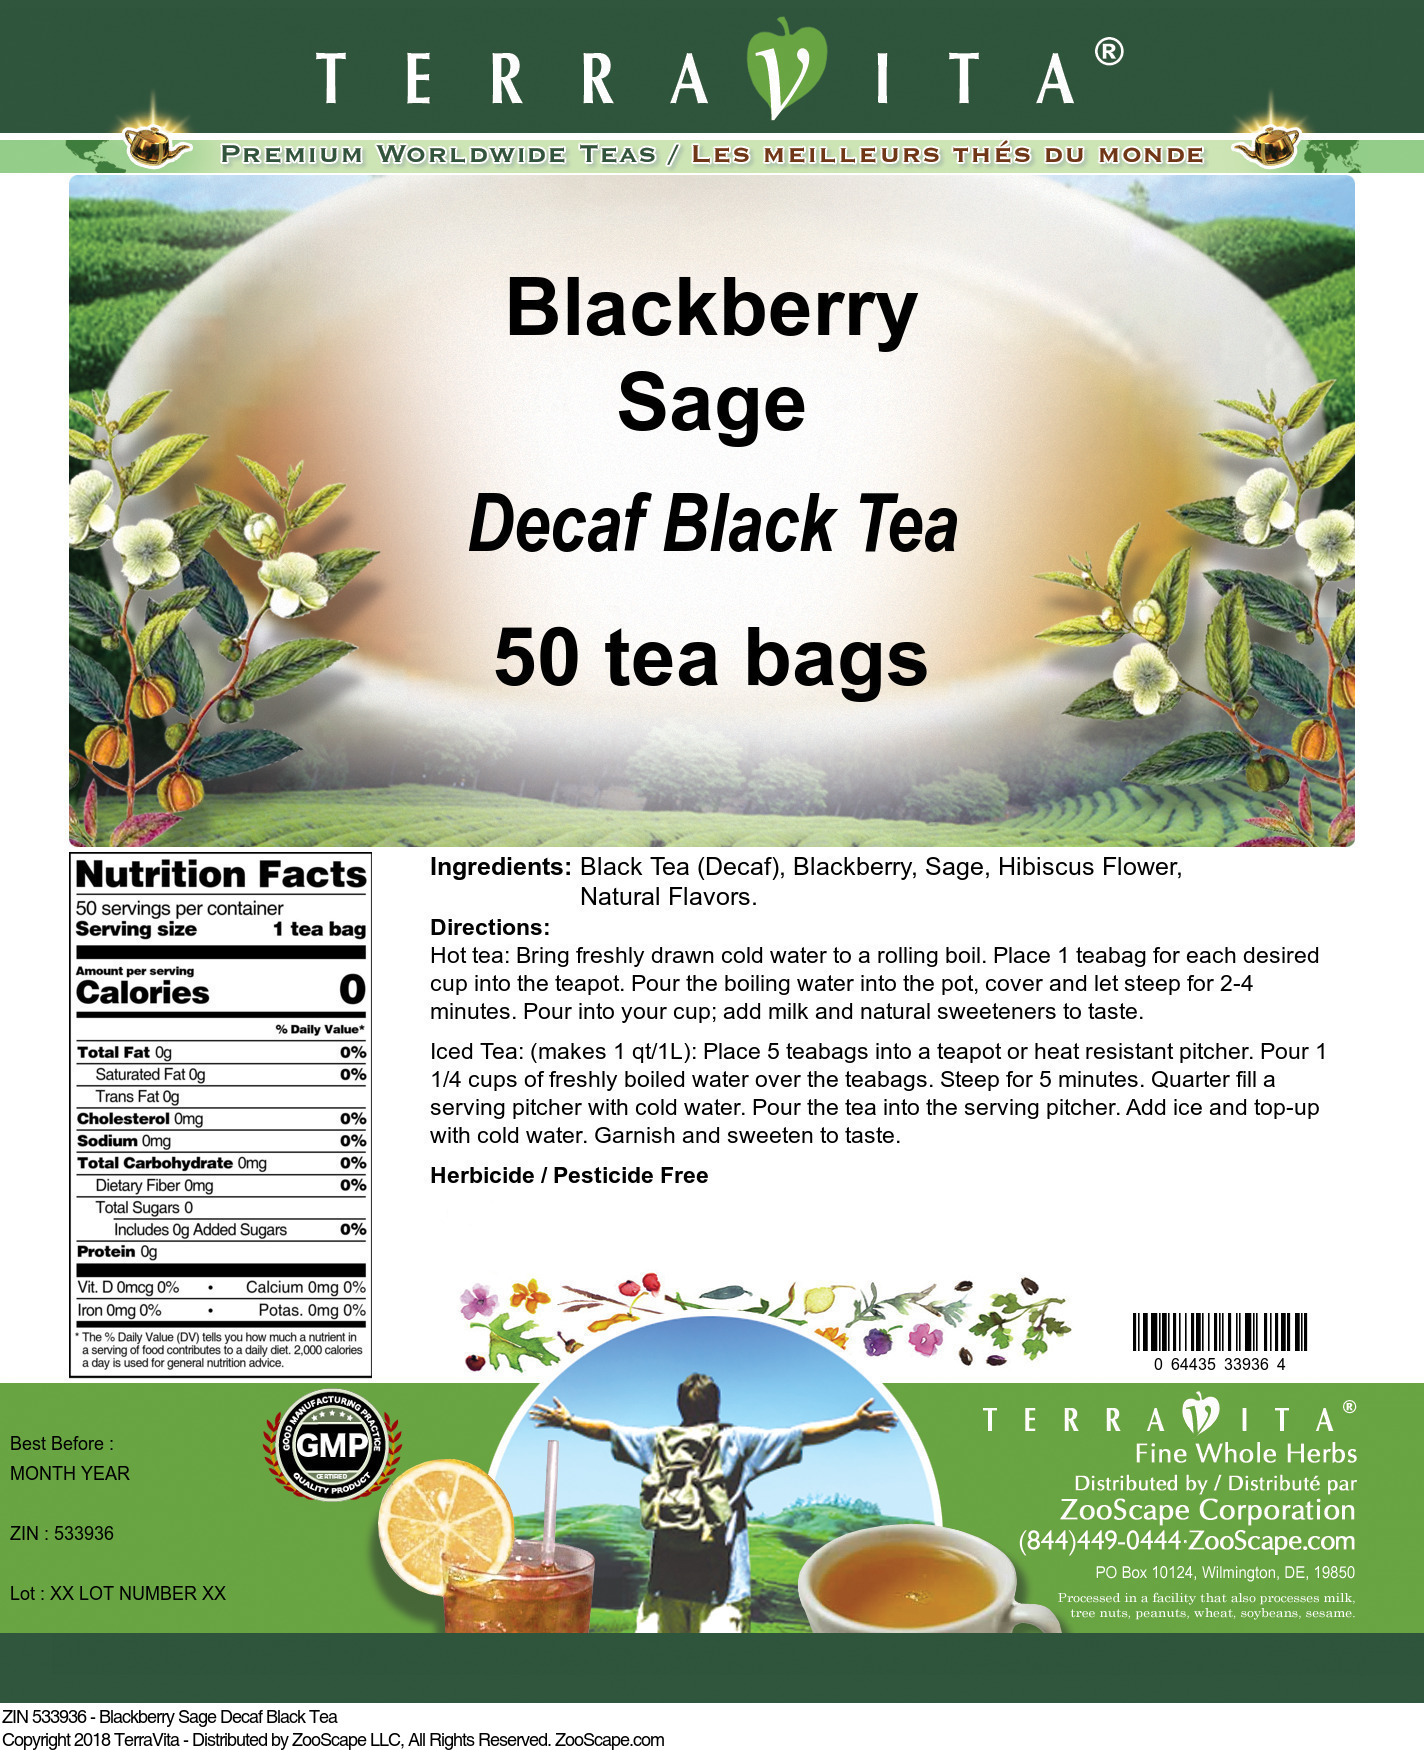 Blackberry Sage Decaf Black Tea - Label